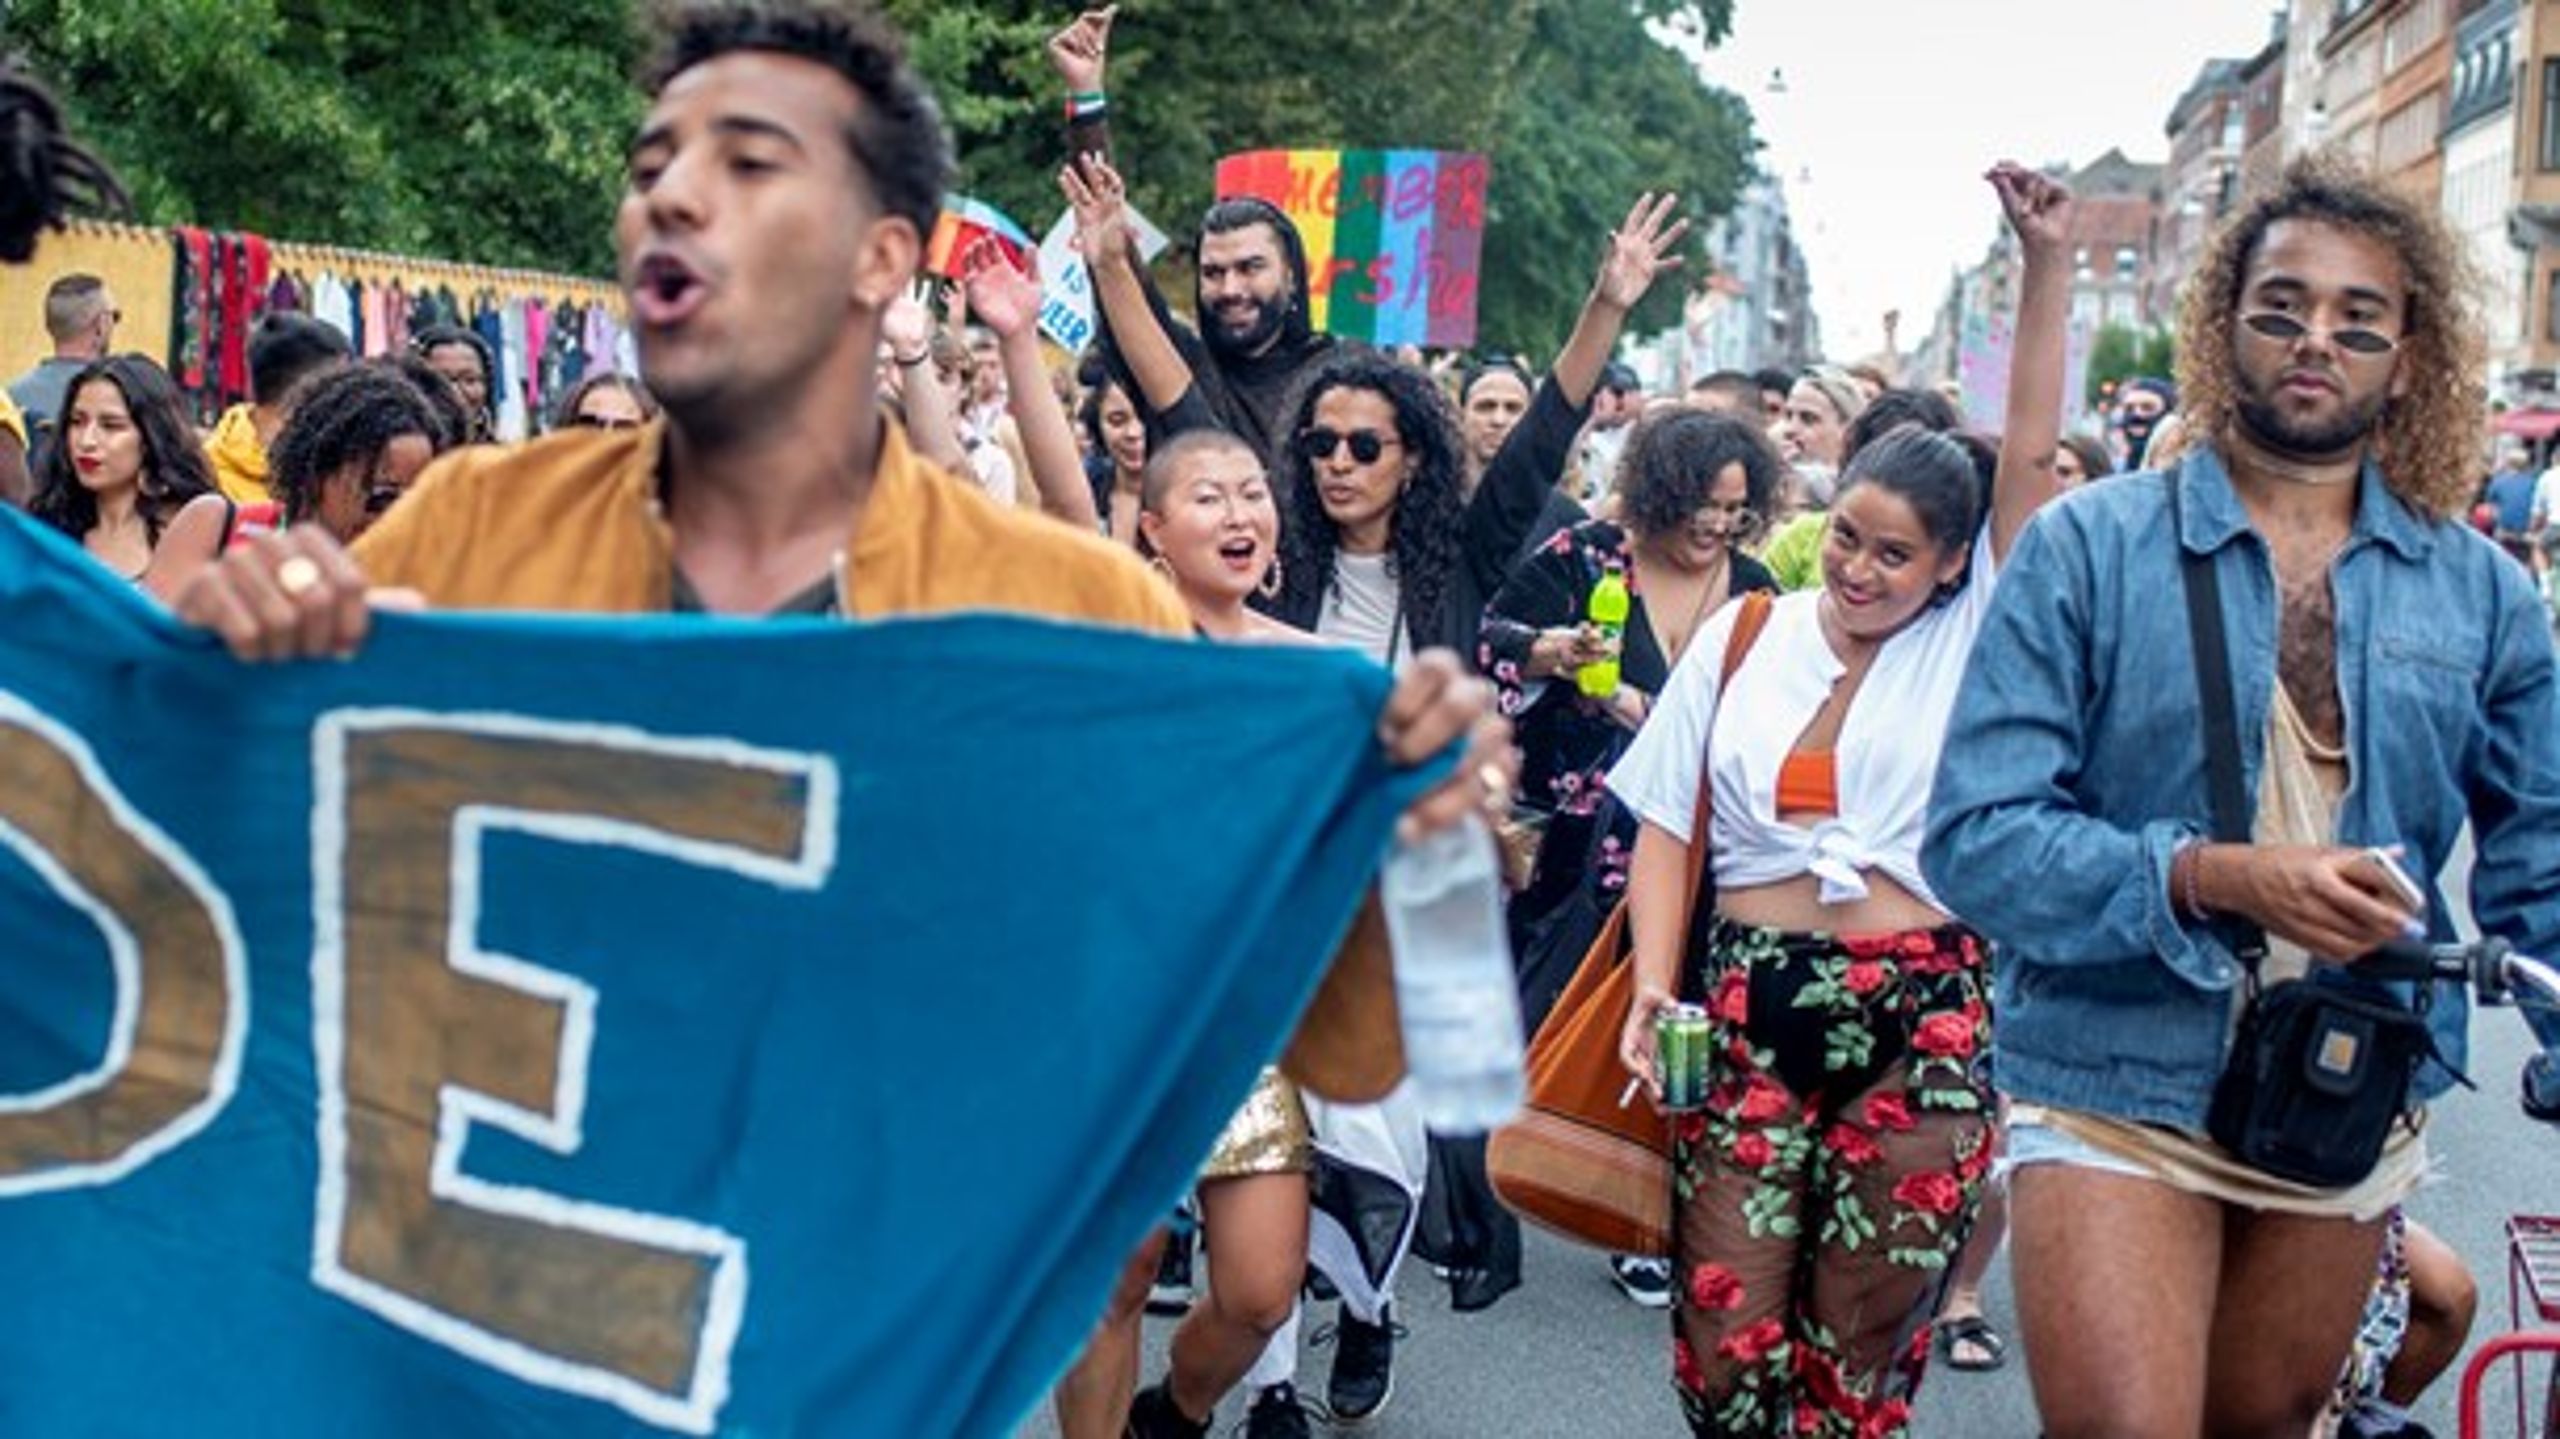 <b>REGNBØVET</b>:&nbsp;Da den alternative pride skulle formeres foran Nørrebro Station, meddelte arrangørerne, at alle ”racialiserede” mennesker skulle gå forrest, skriver Anna Libak.